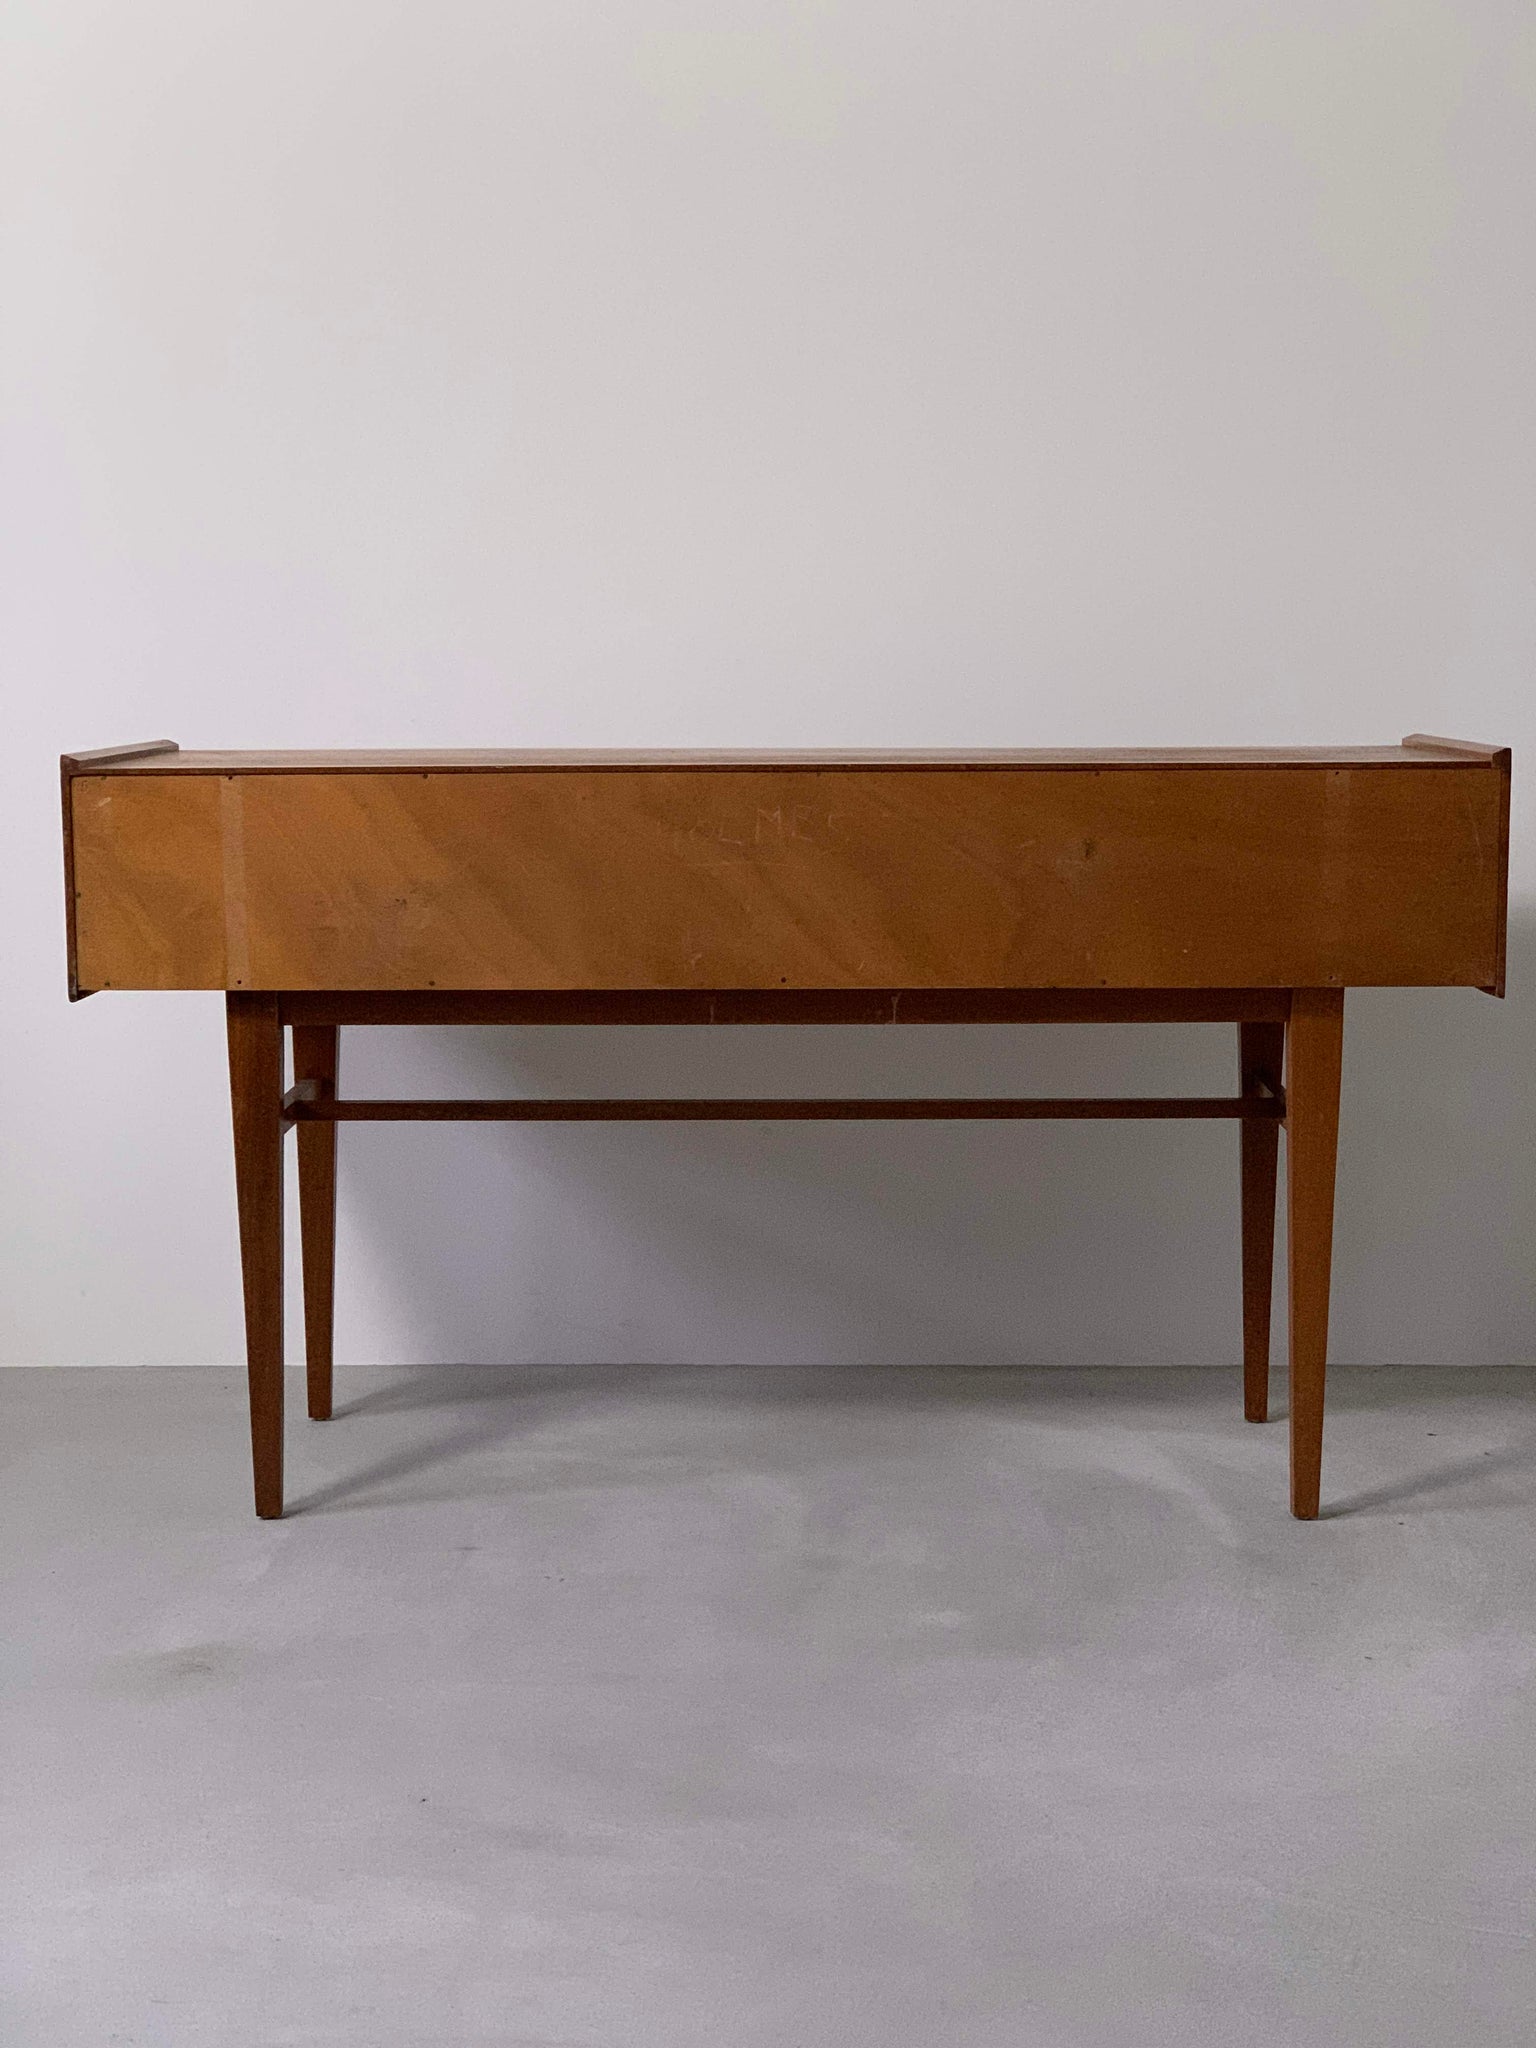 マホガニー サイド デスク テーブル / mahogany side desk table #0084